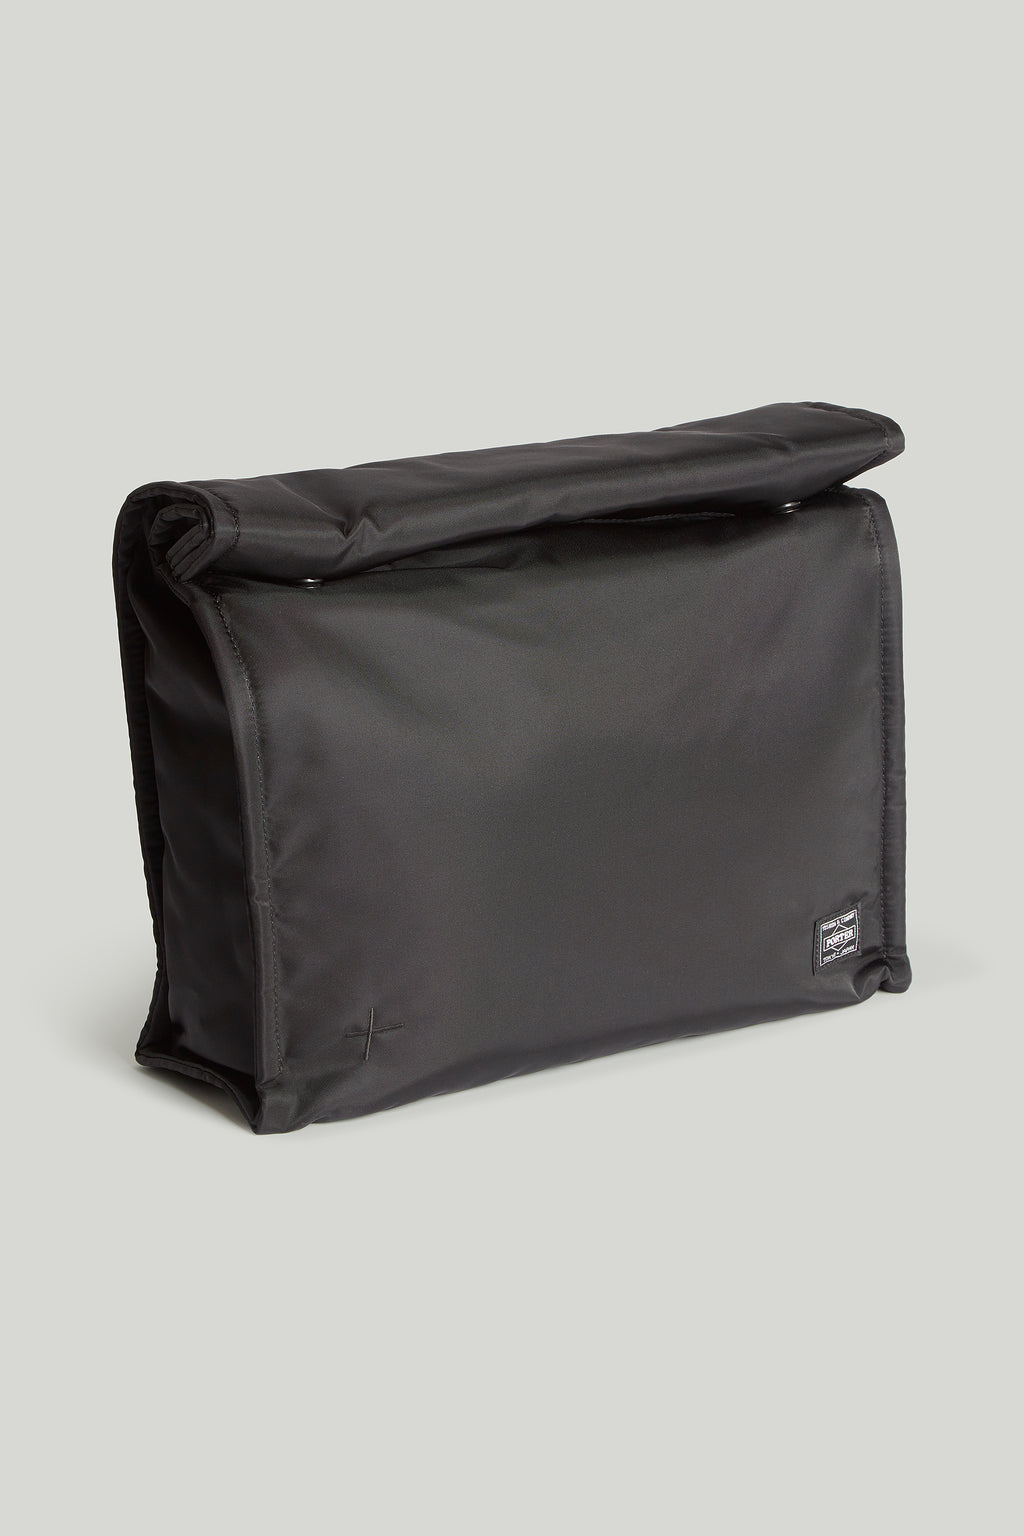 Toogood x Porter Yoshida & Co. Handmade Grocer Bag - Black